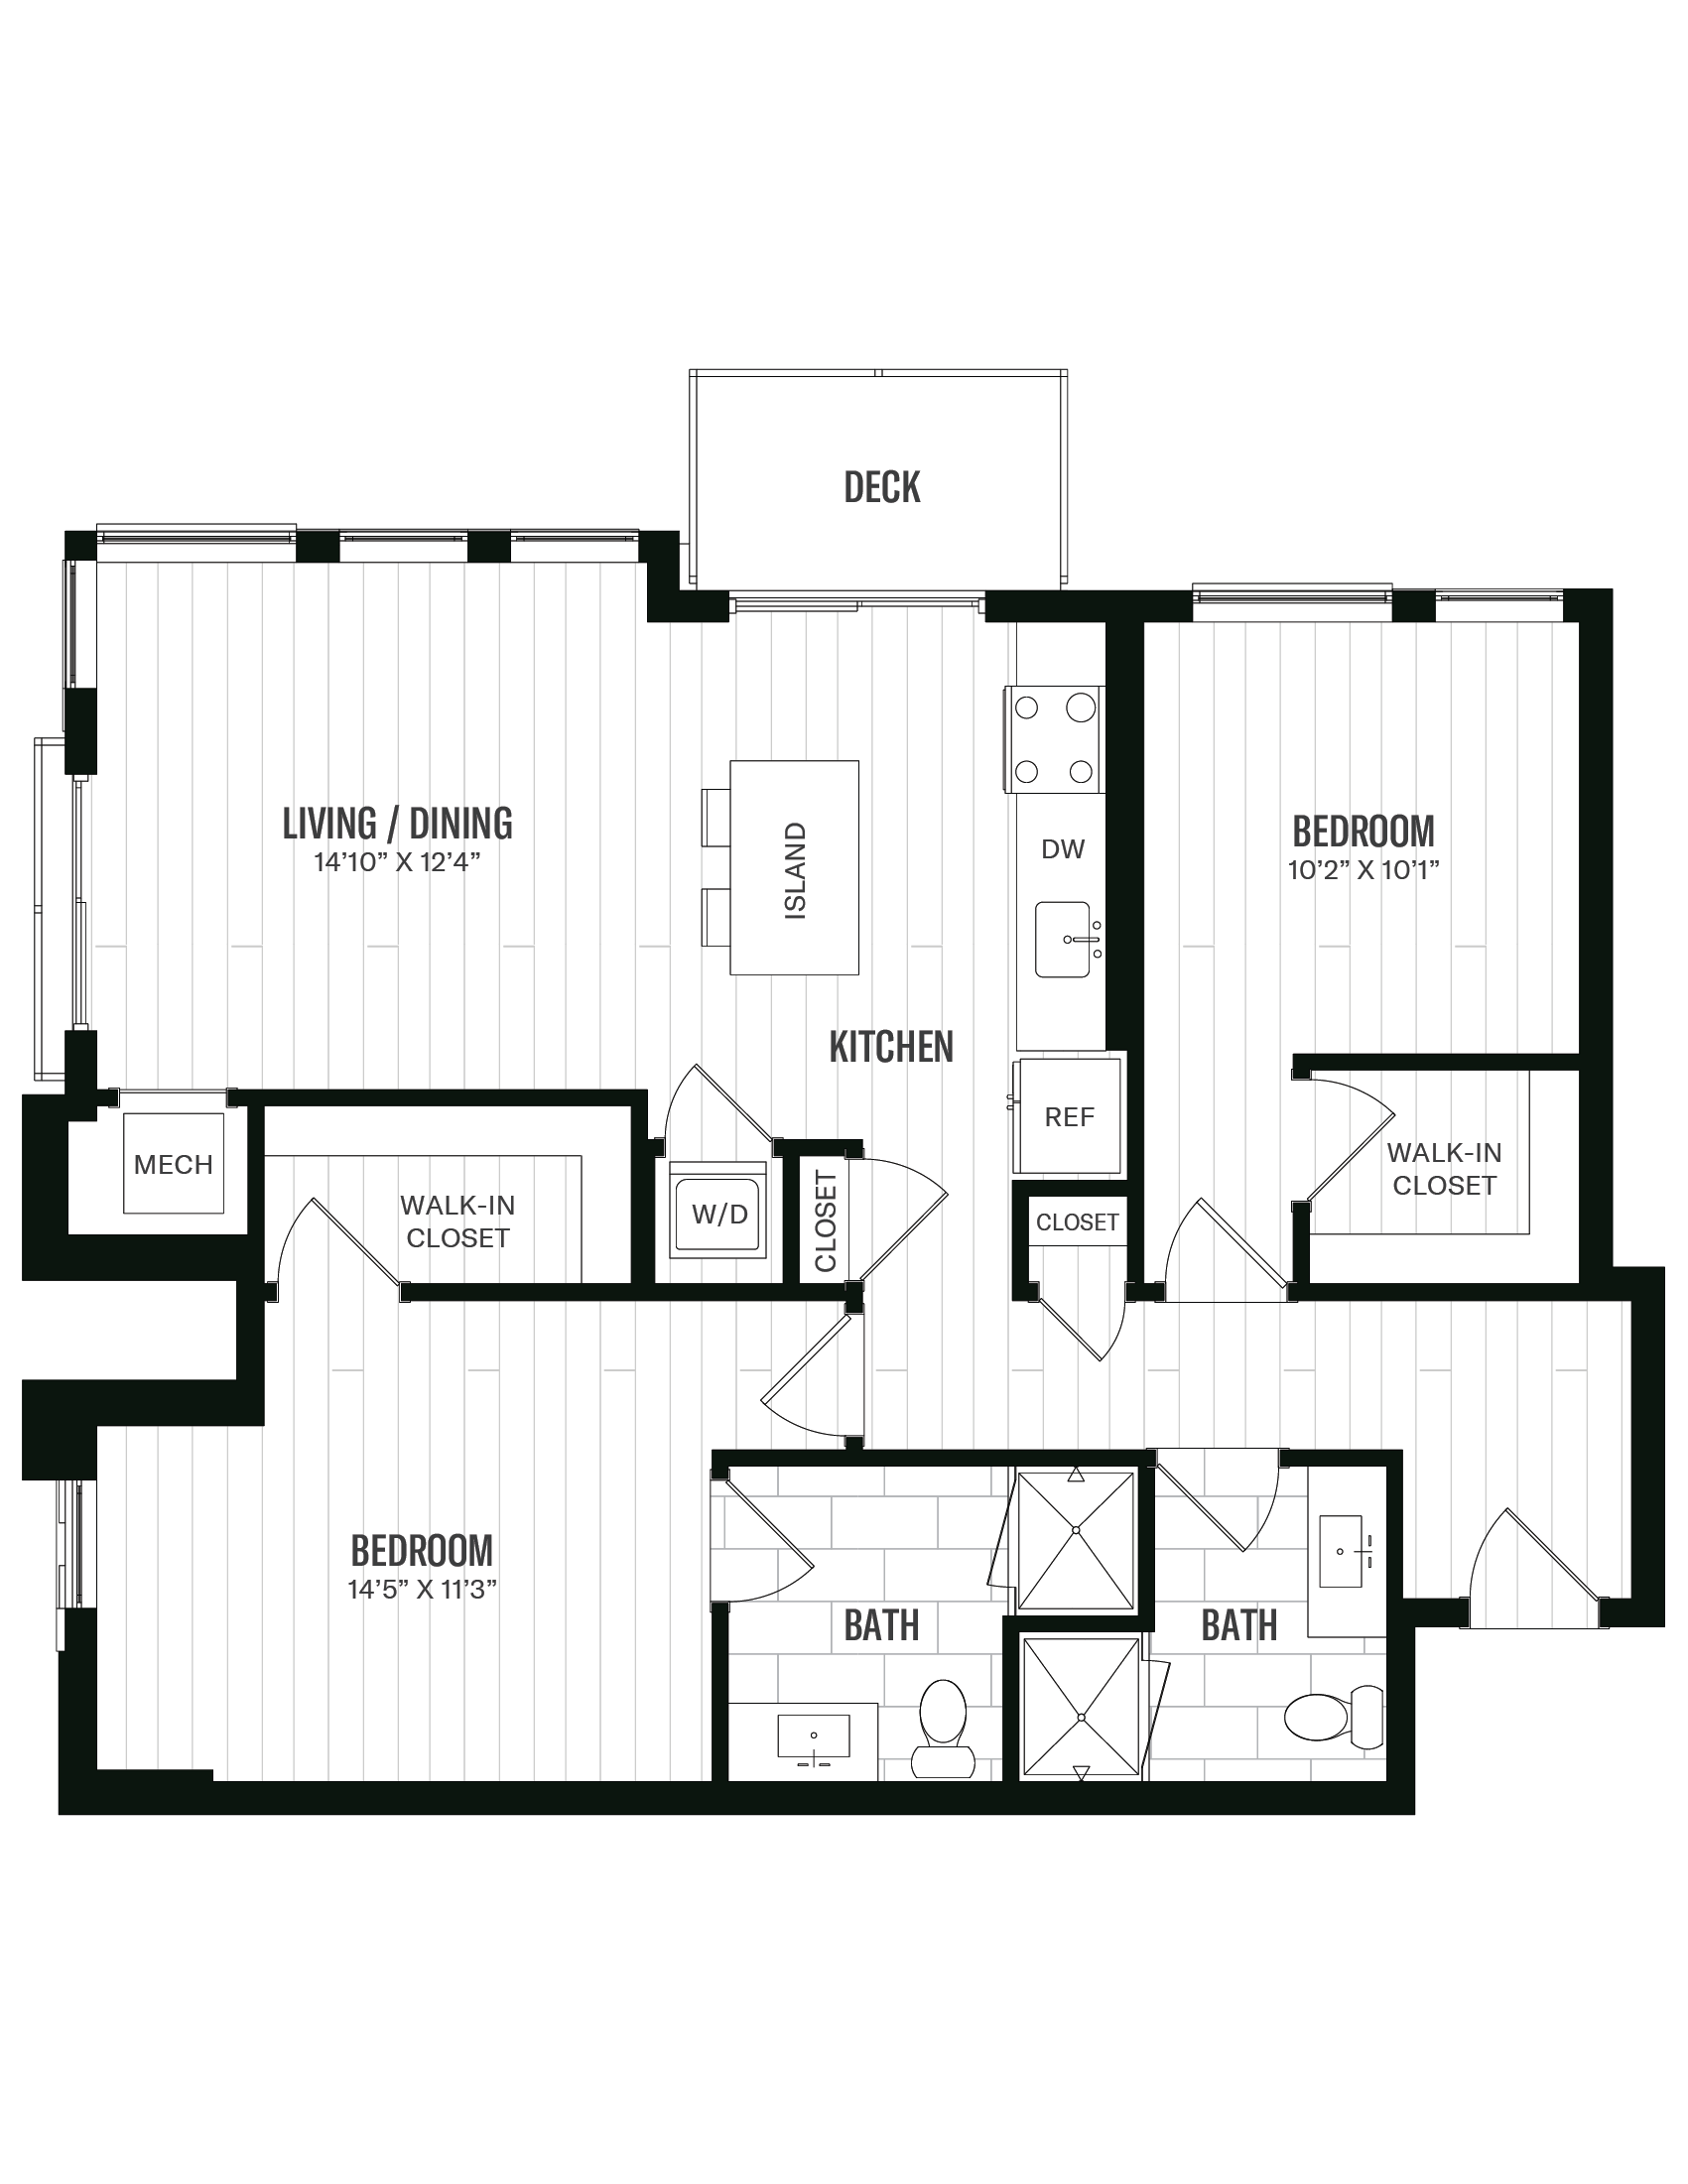 Floorplan image of unit 554